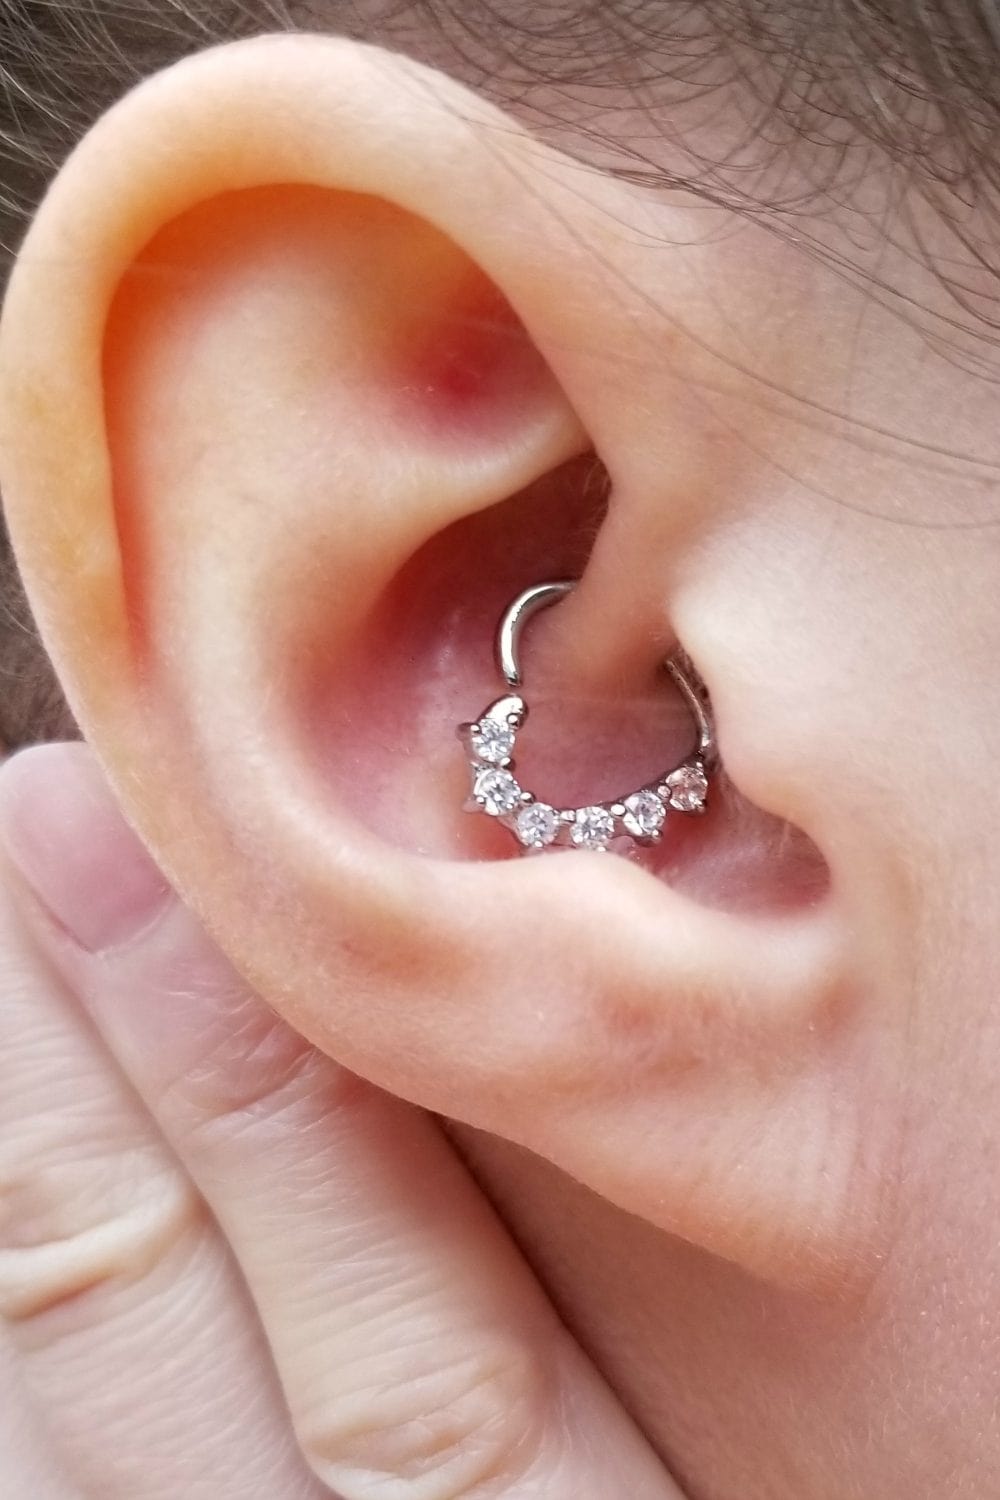 Ear with a heart-shaped daith earring